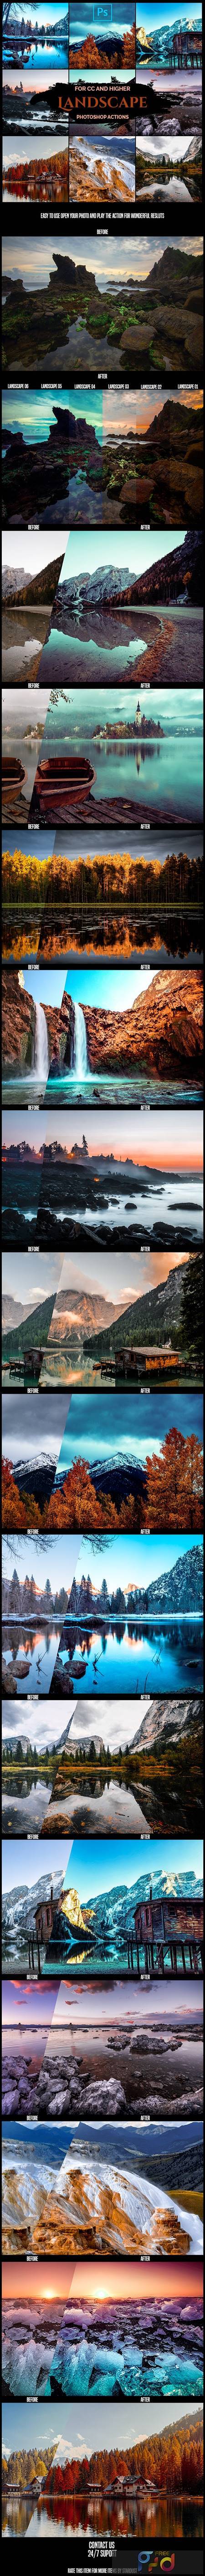 Landscape - Pro Photoshop Actions 26070745 1